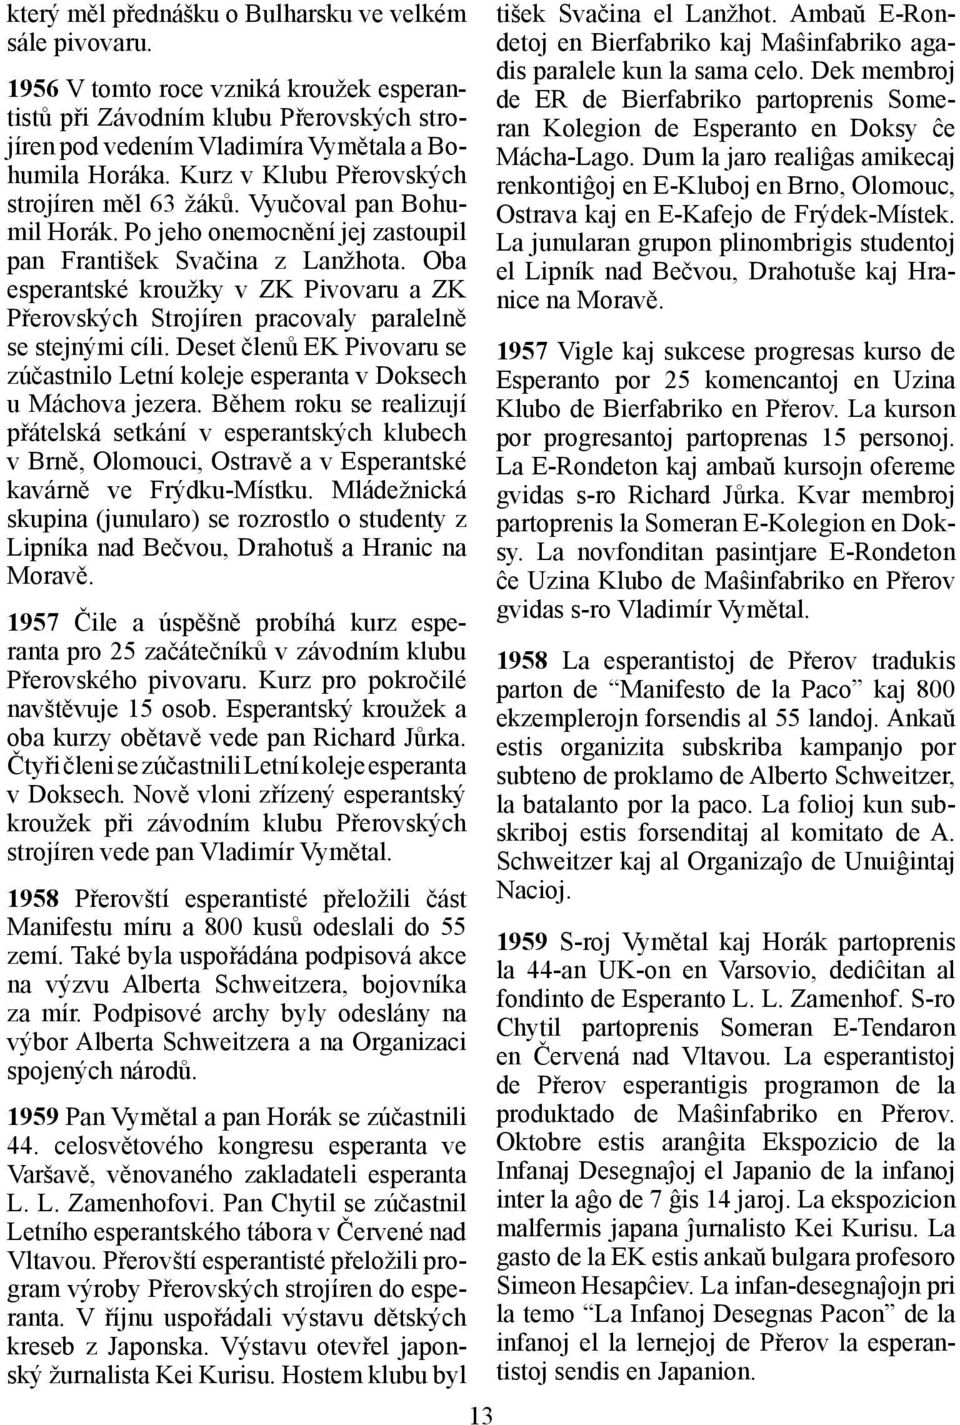 Oba esperantské kroužky v ZK Pivovaru a ZK Přerovských Strojíren pracovaly paralelně se stejnými cíli. Deset členů EK Pivovaru se zúčastnilo Letní koleje esperanta v Doksech u Máchova jezera.